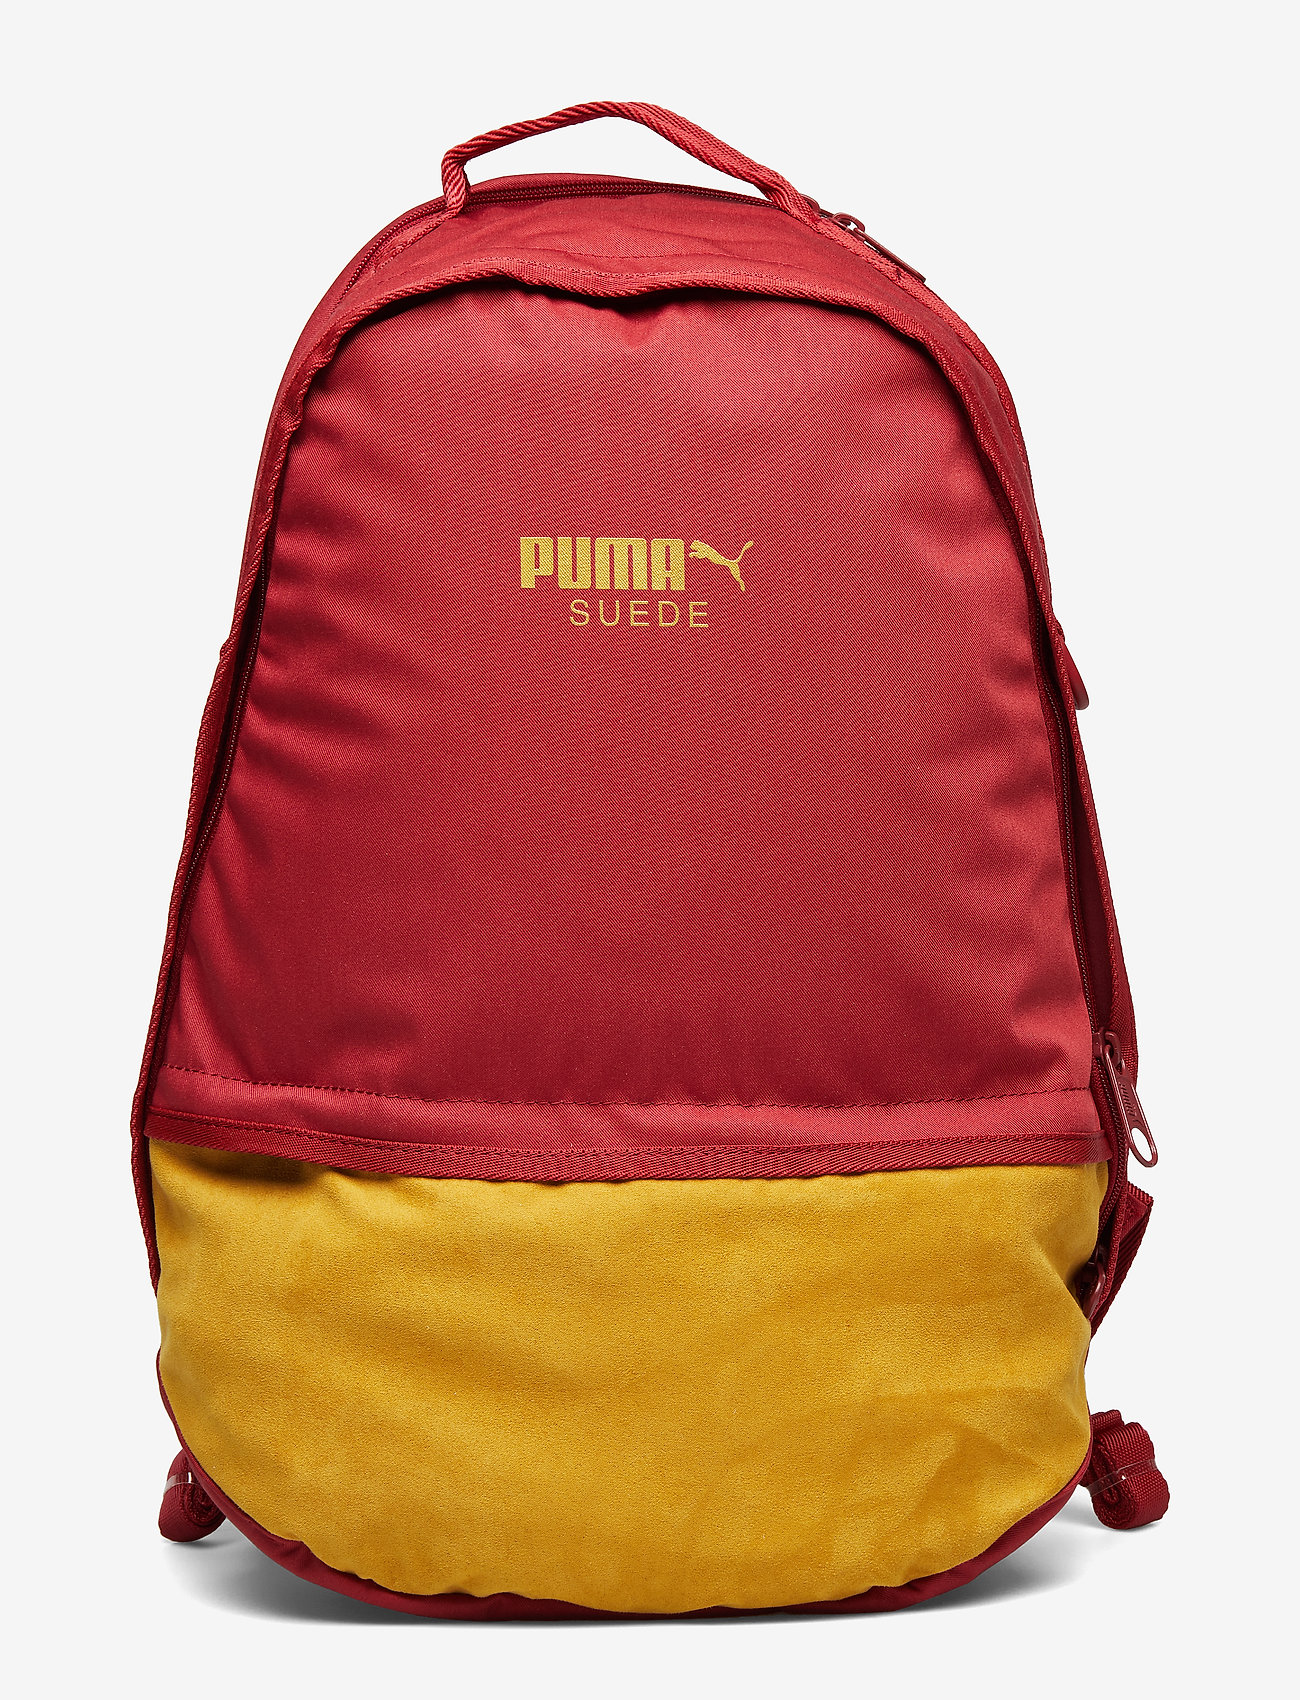 puma mesh backpack